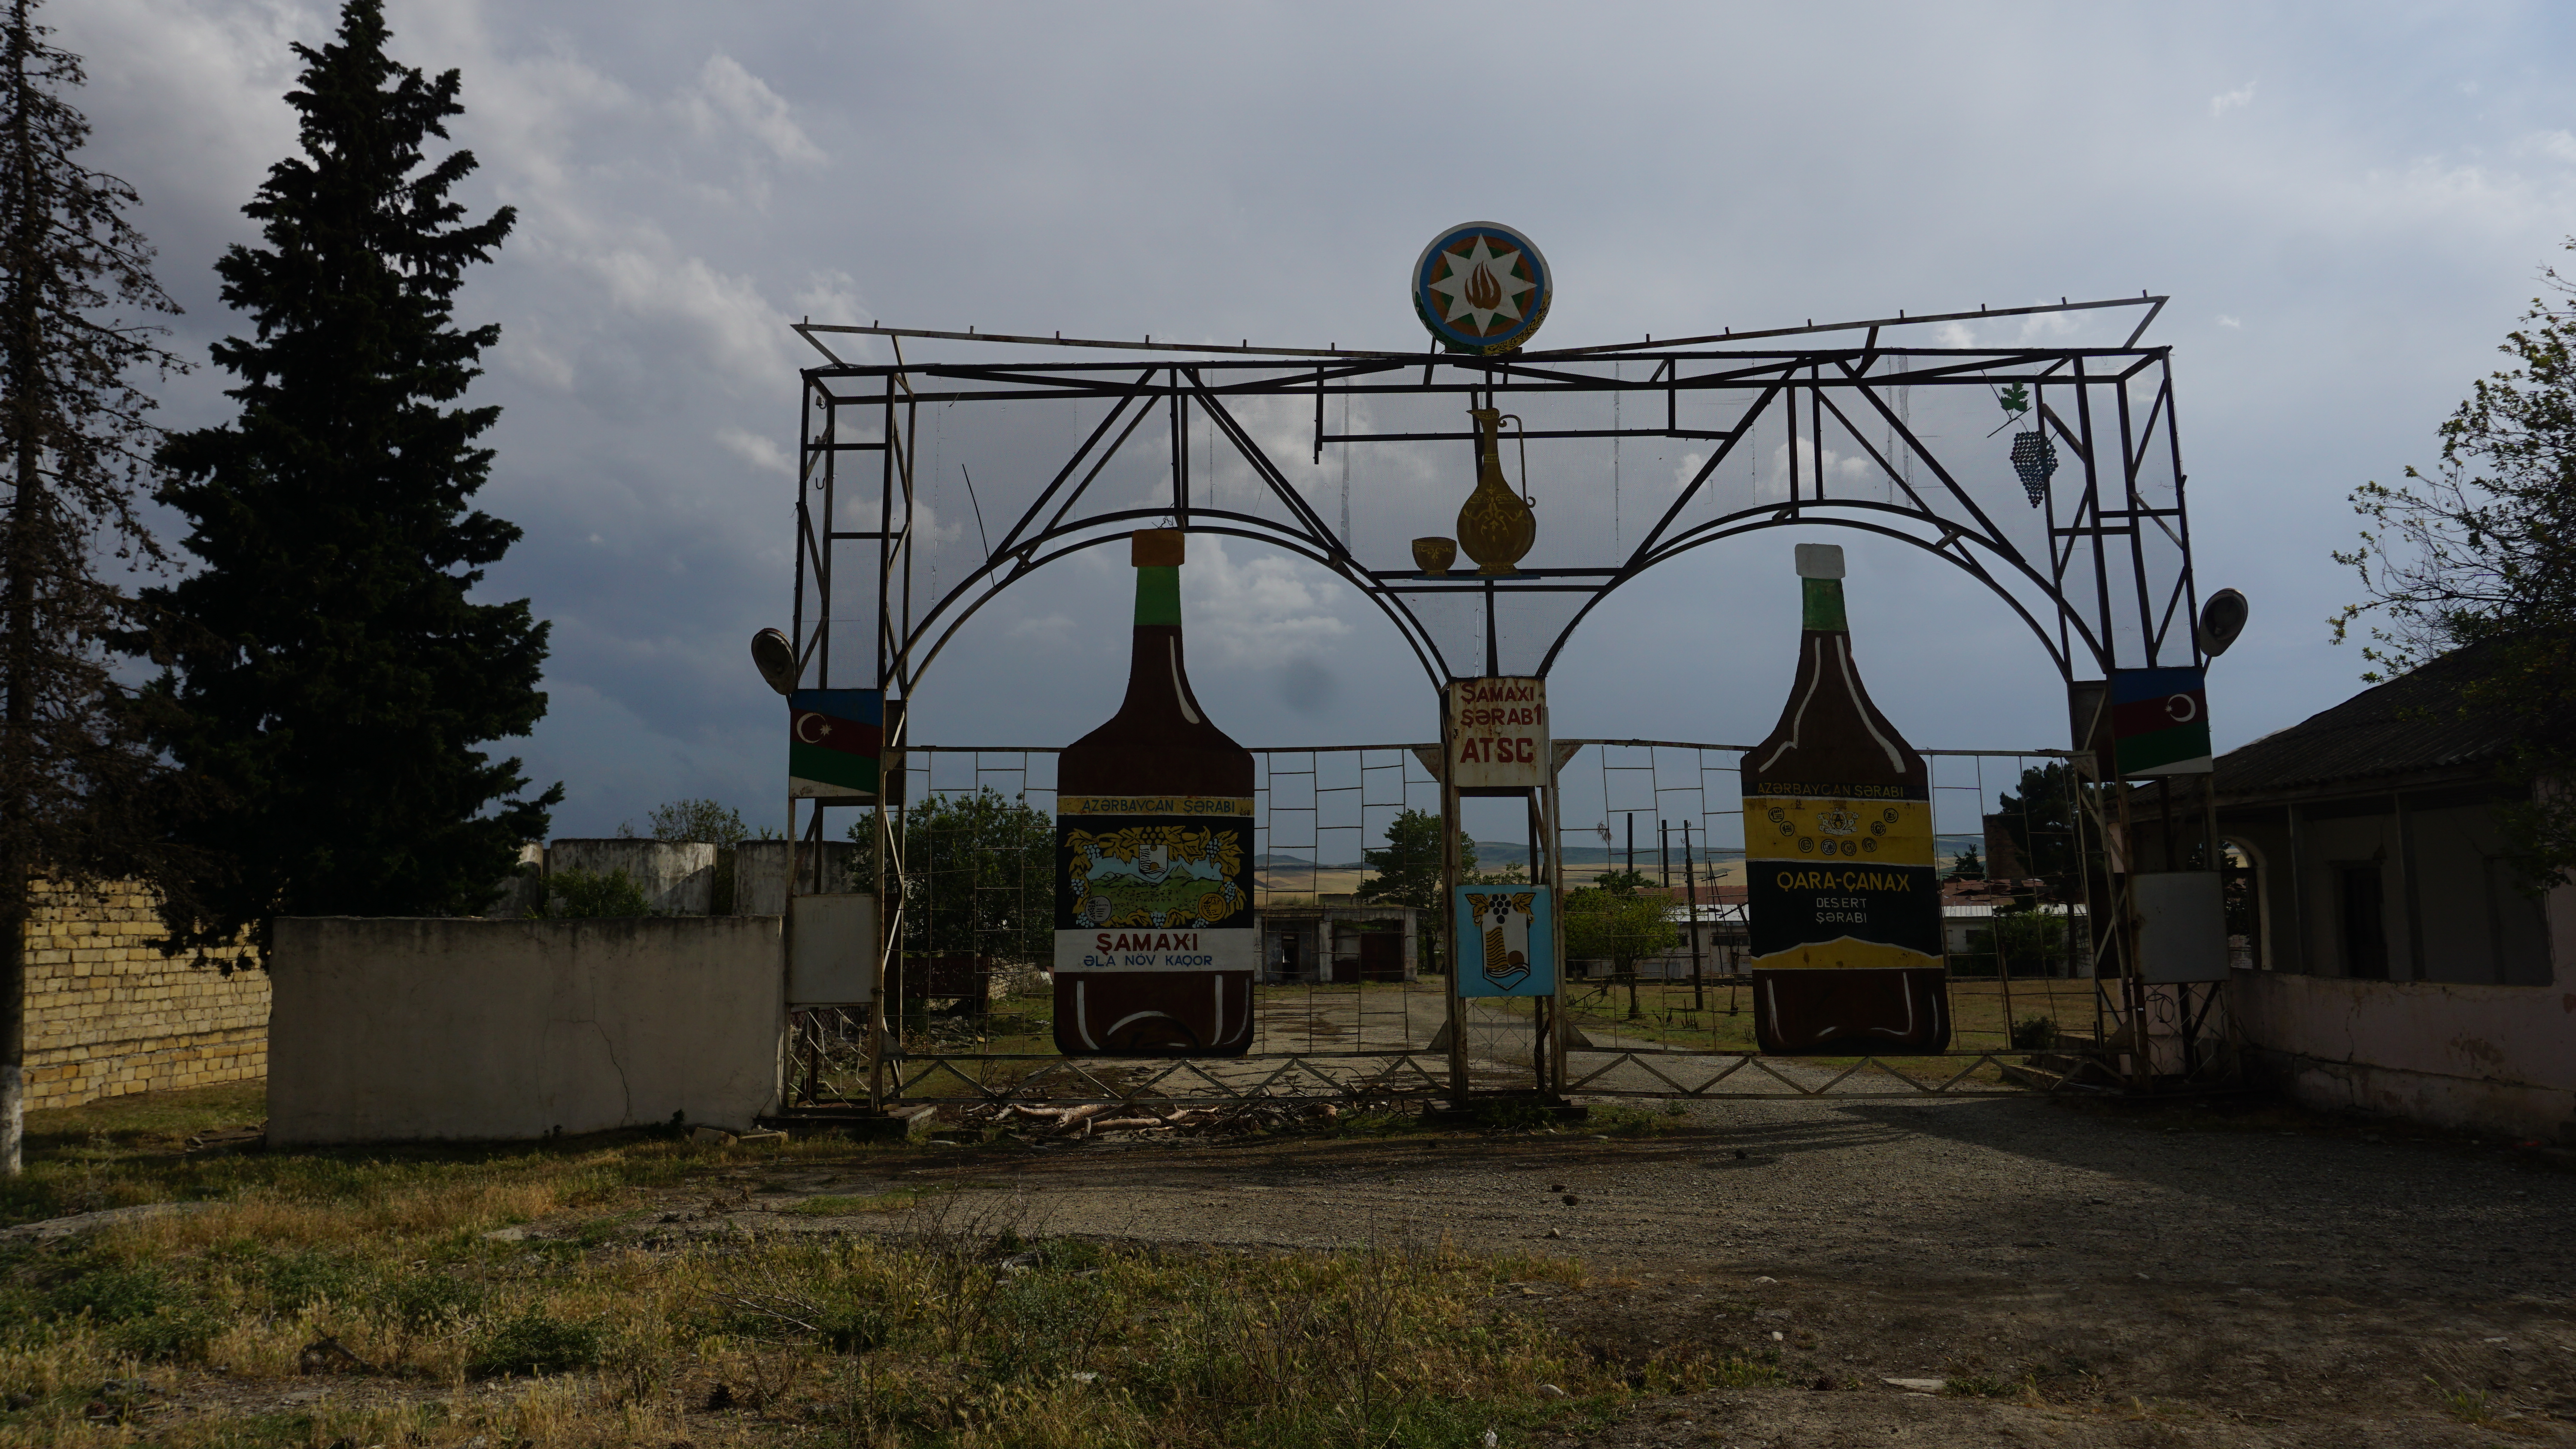 Когда-то это был самый большой винодельный завод в Шамахы. Шамахы, Азербайджан. Фото Ислам Шыхали